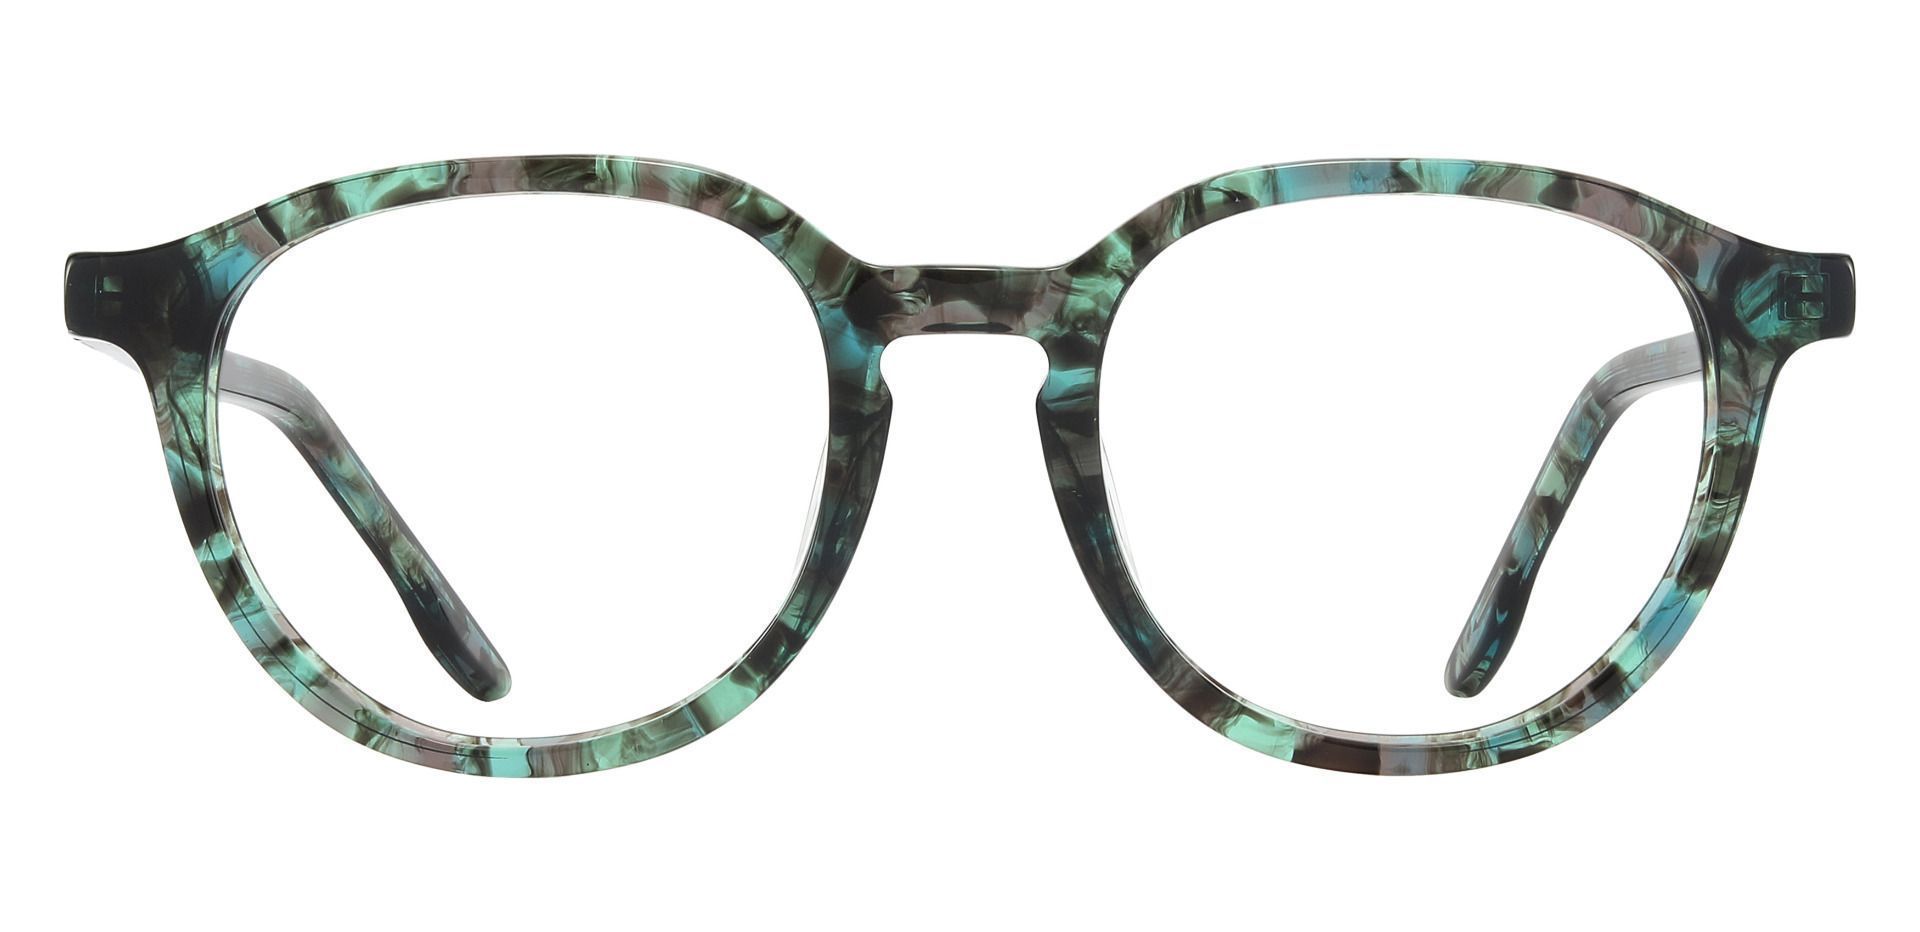 Ashley Oval Prescription Glasses - Green